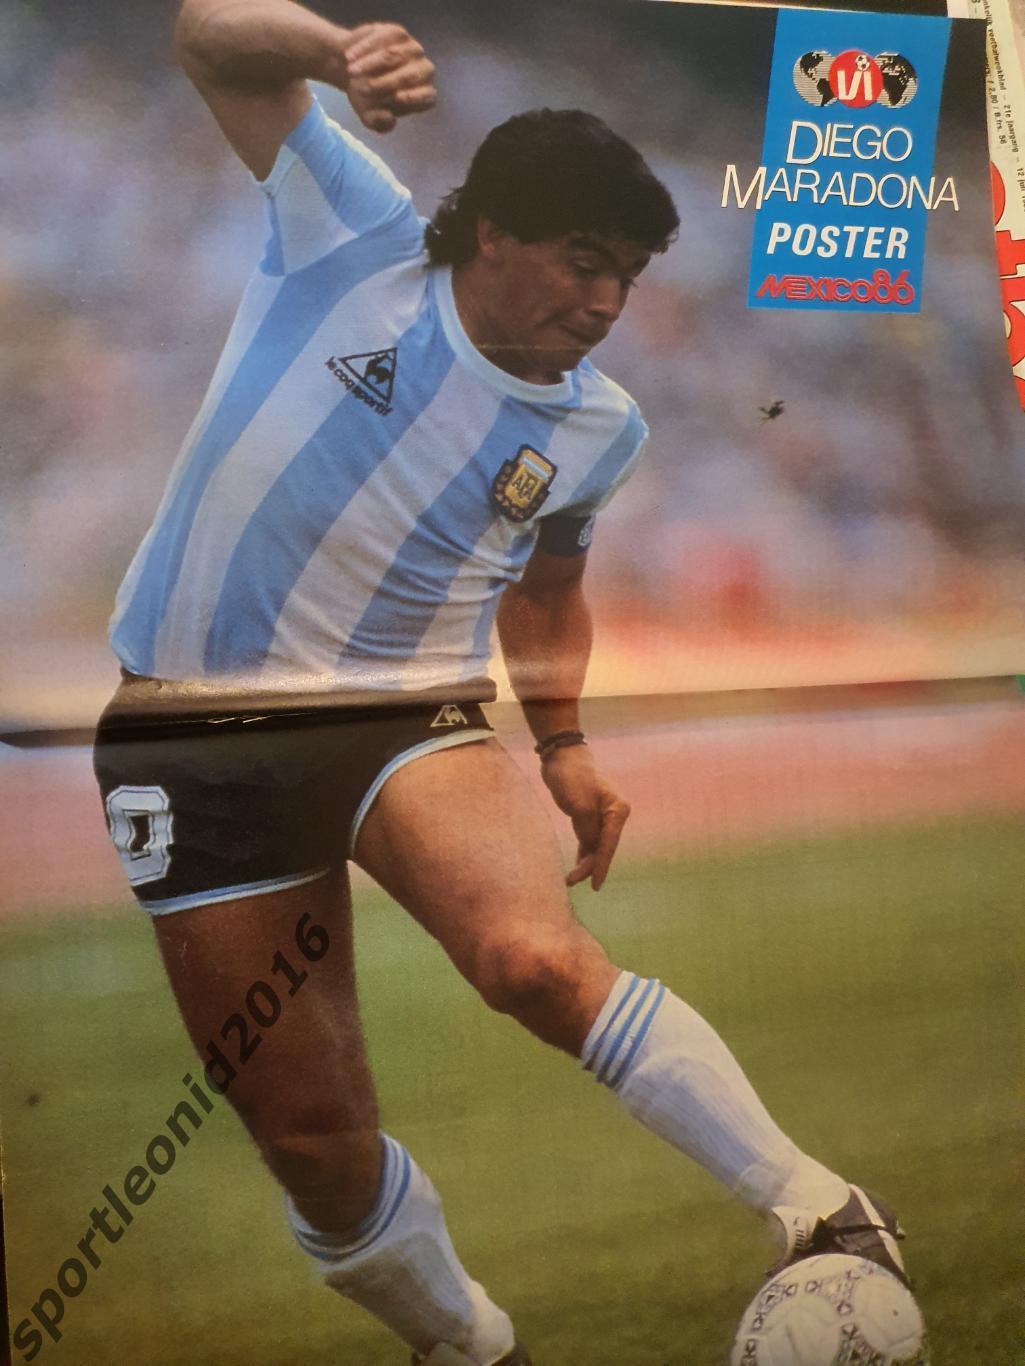 Voetbal International 1986.14 топ выпусков.В том числе итоговые к ЧМ-86.1 7